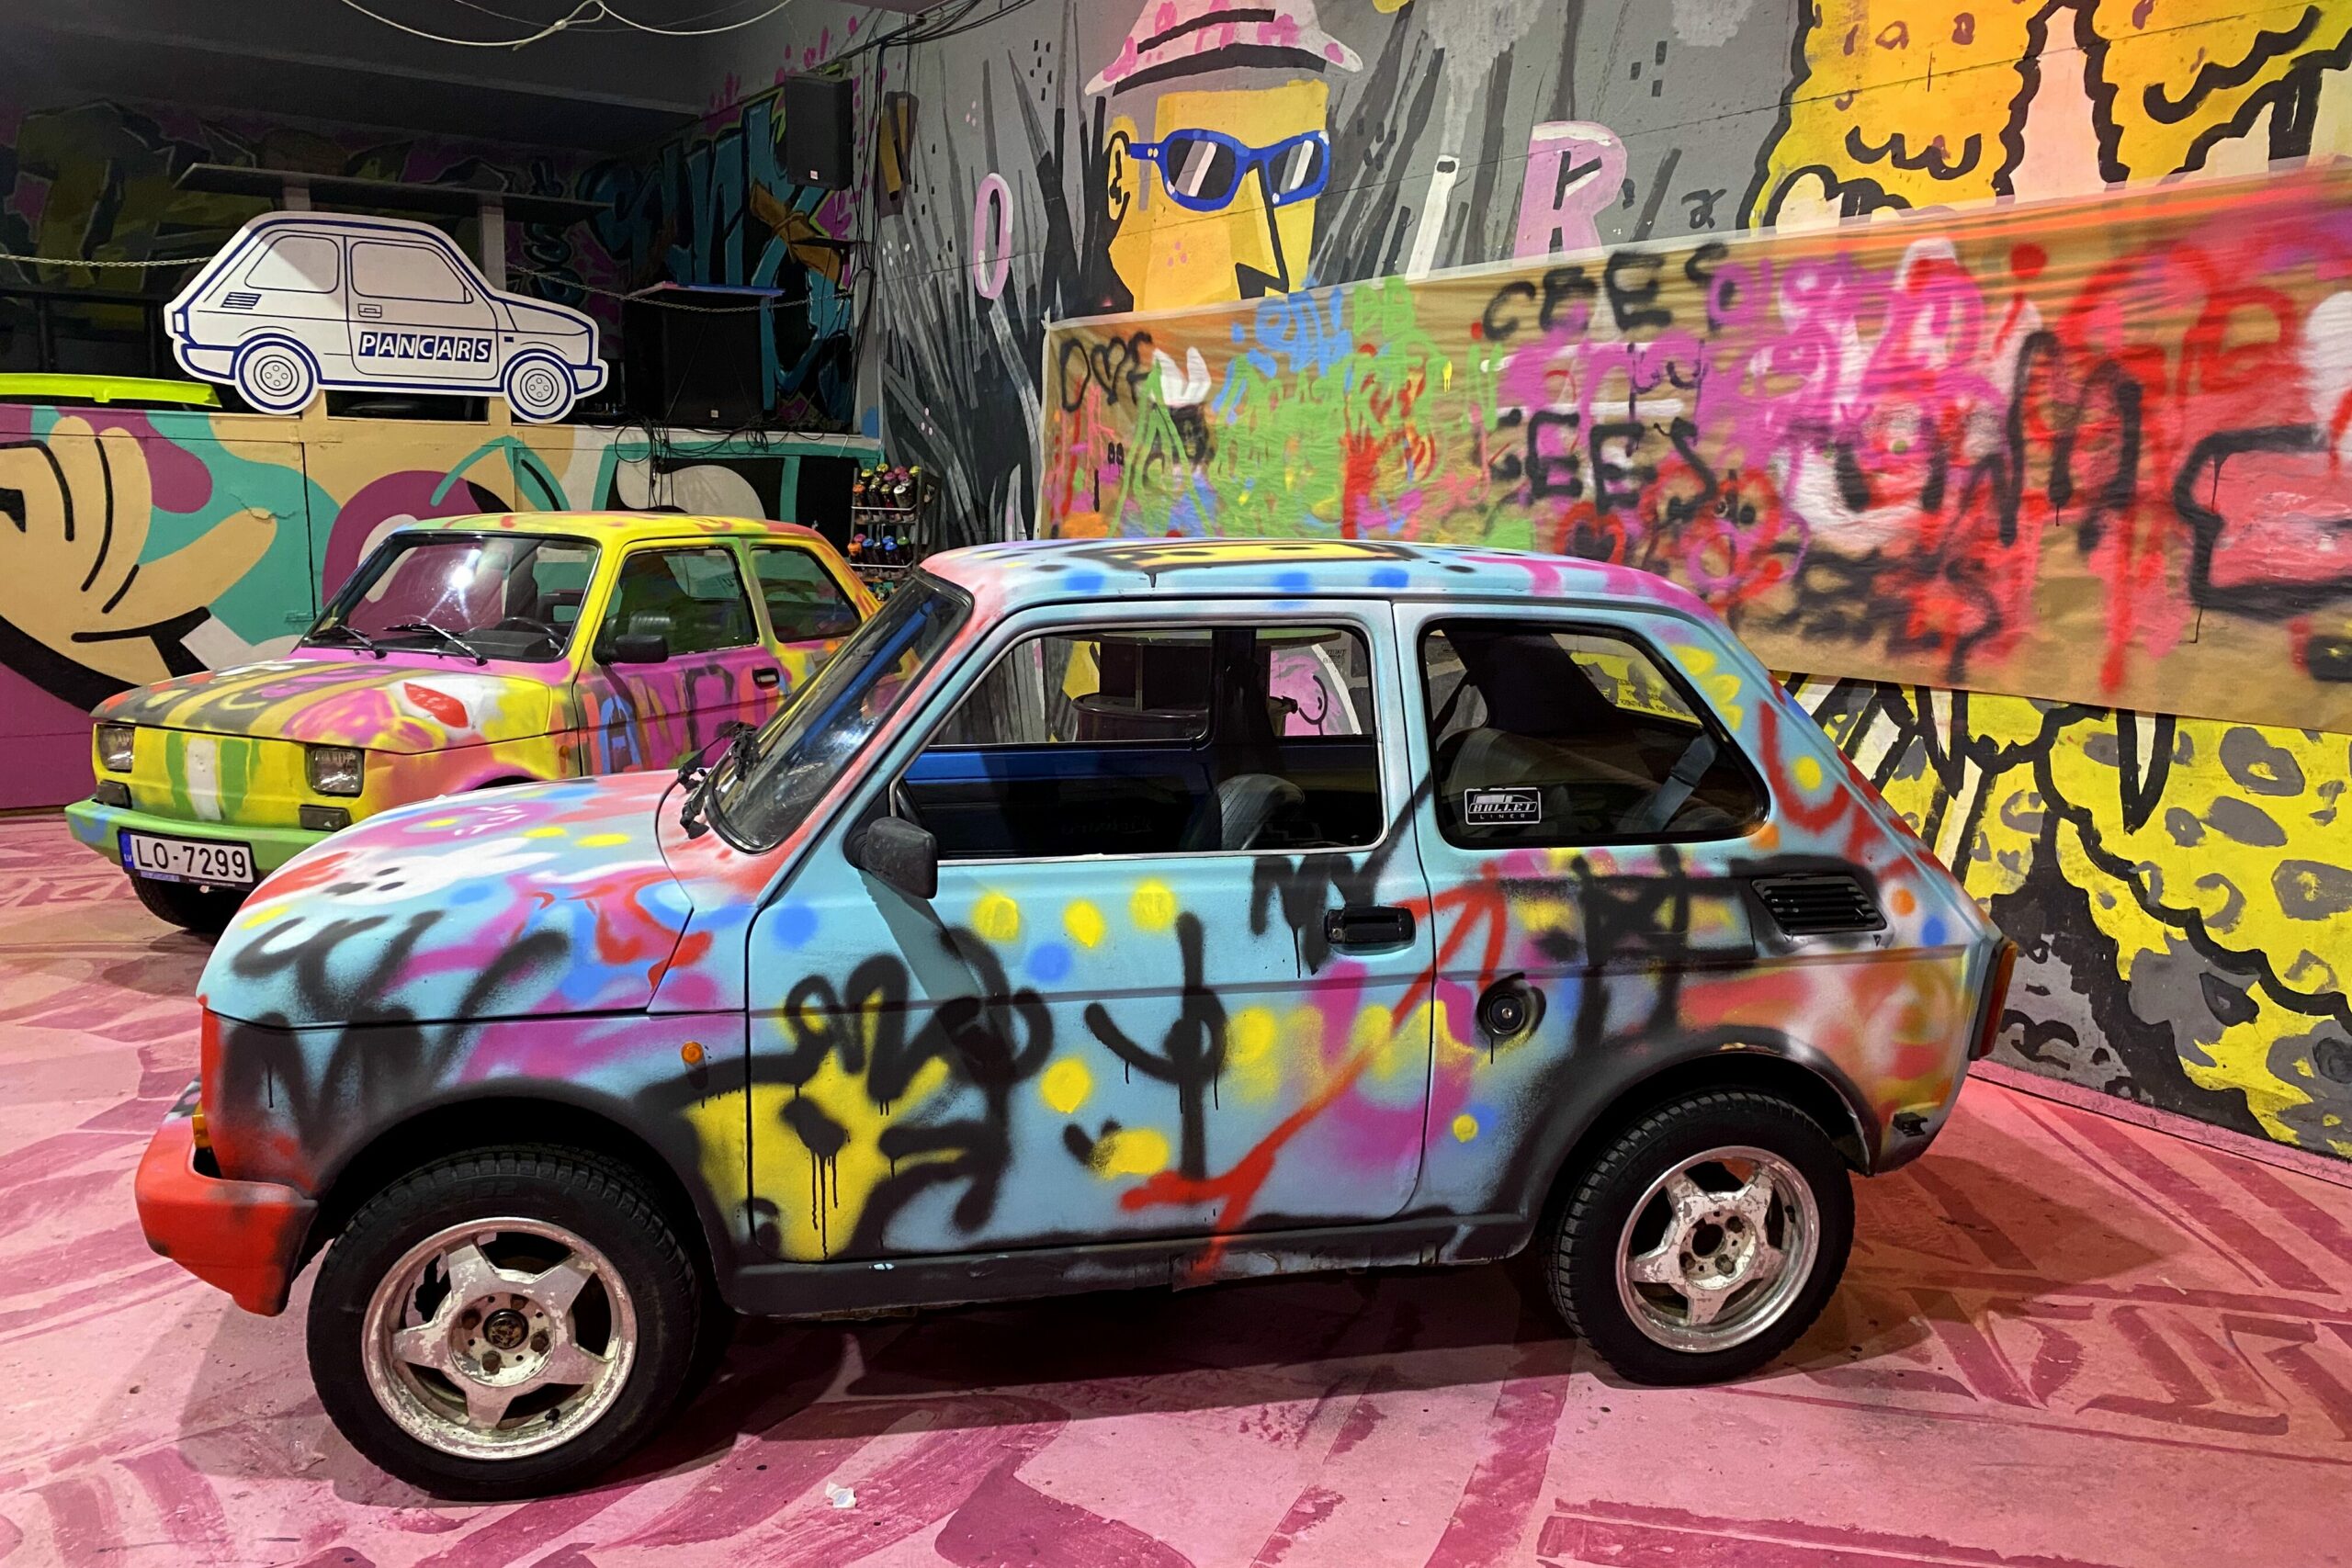 Fargerike Fiat-biler på utstilling. Foto